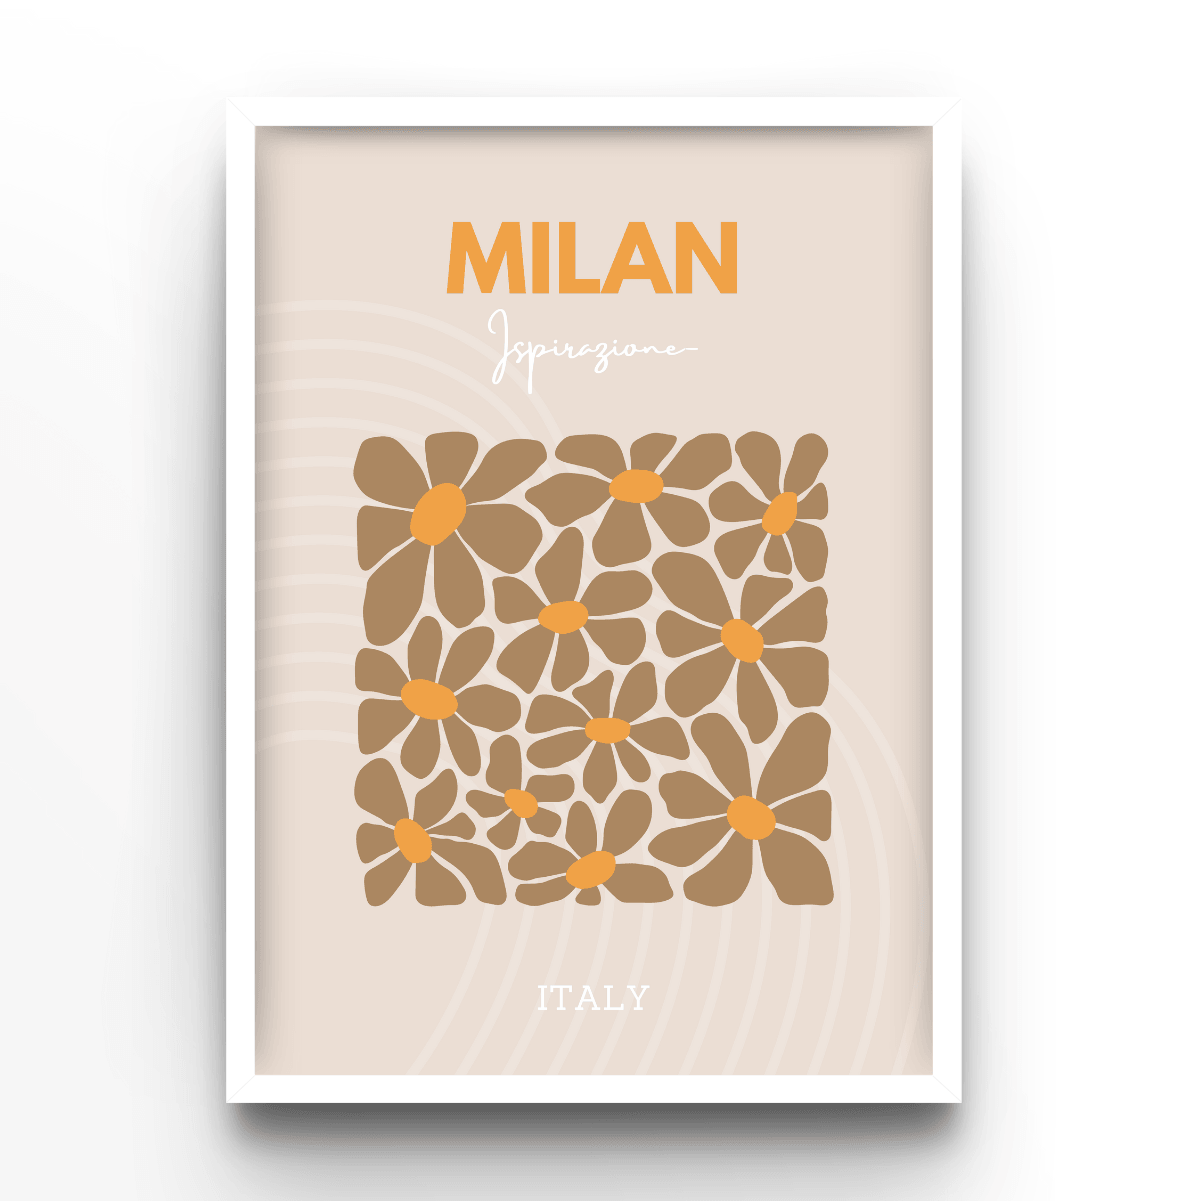 Milan - A4, A3, A2 Posters Base - Poster Print Shop / Art Prints / PostersBase